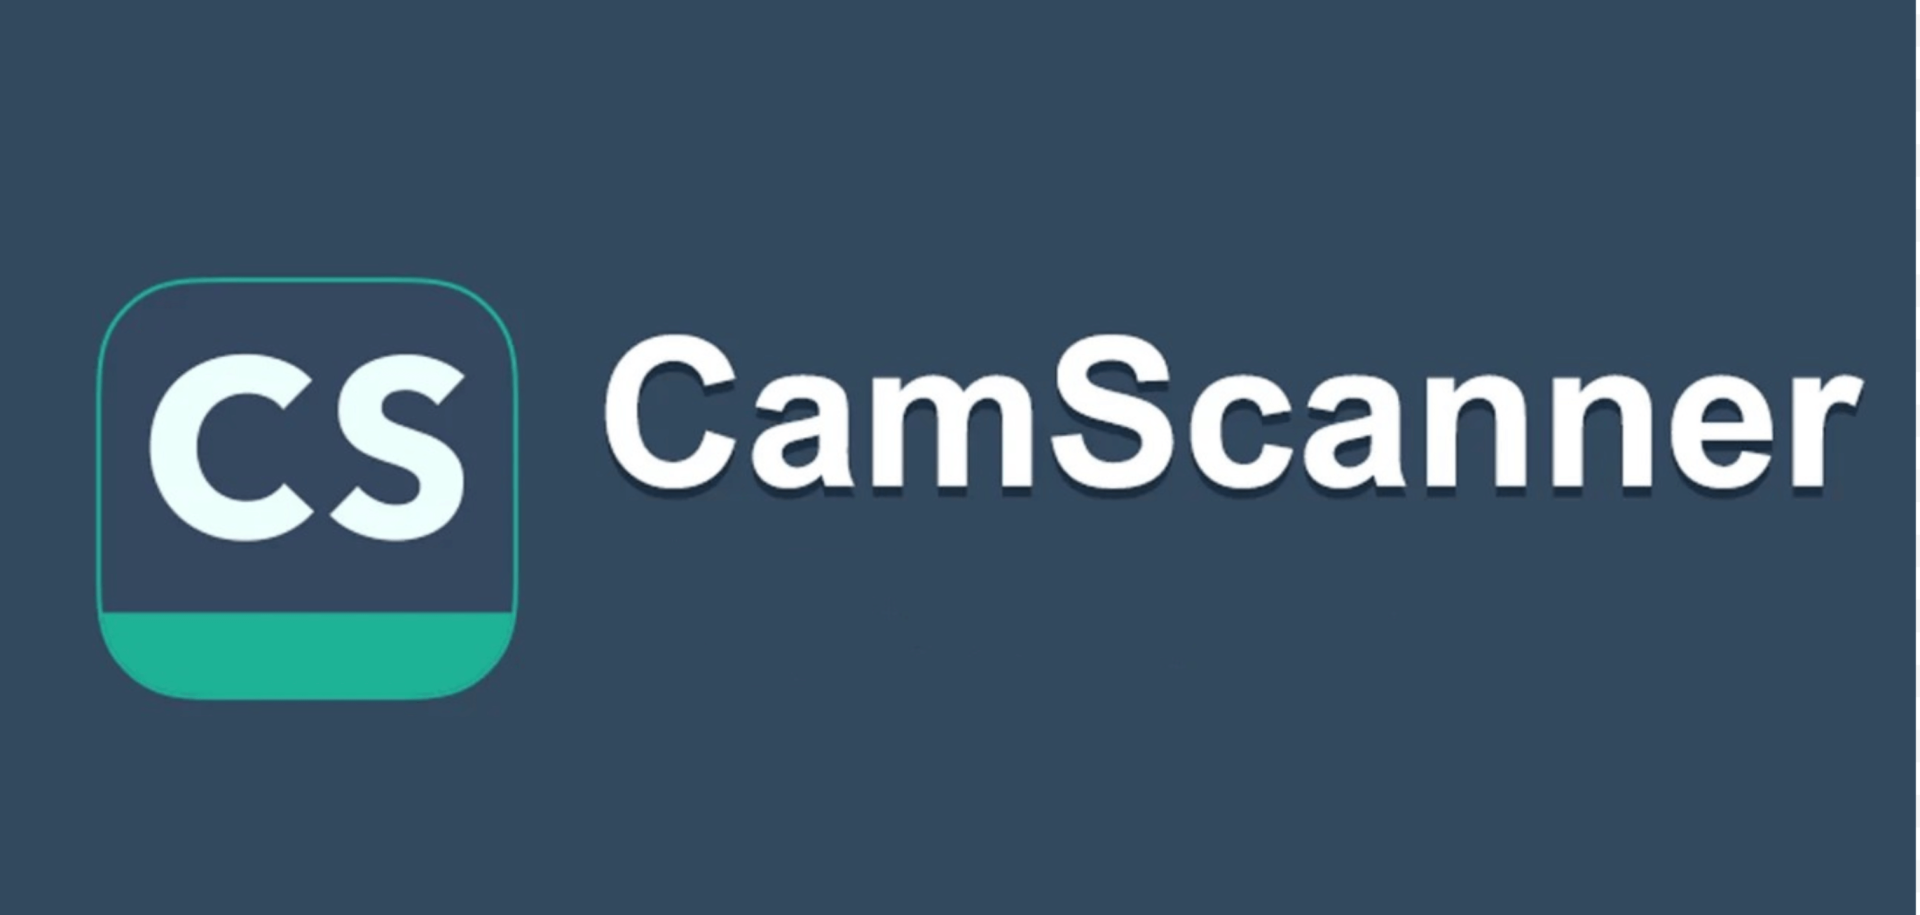 CamScanner Provides Free Online PDF Converter